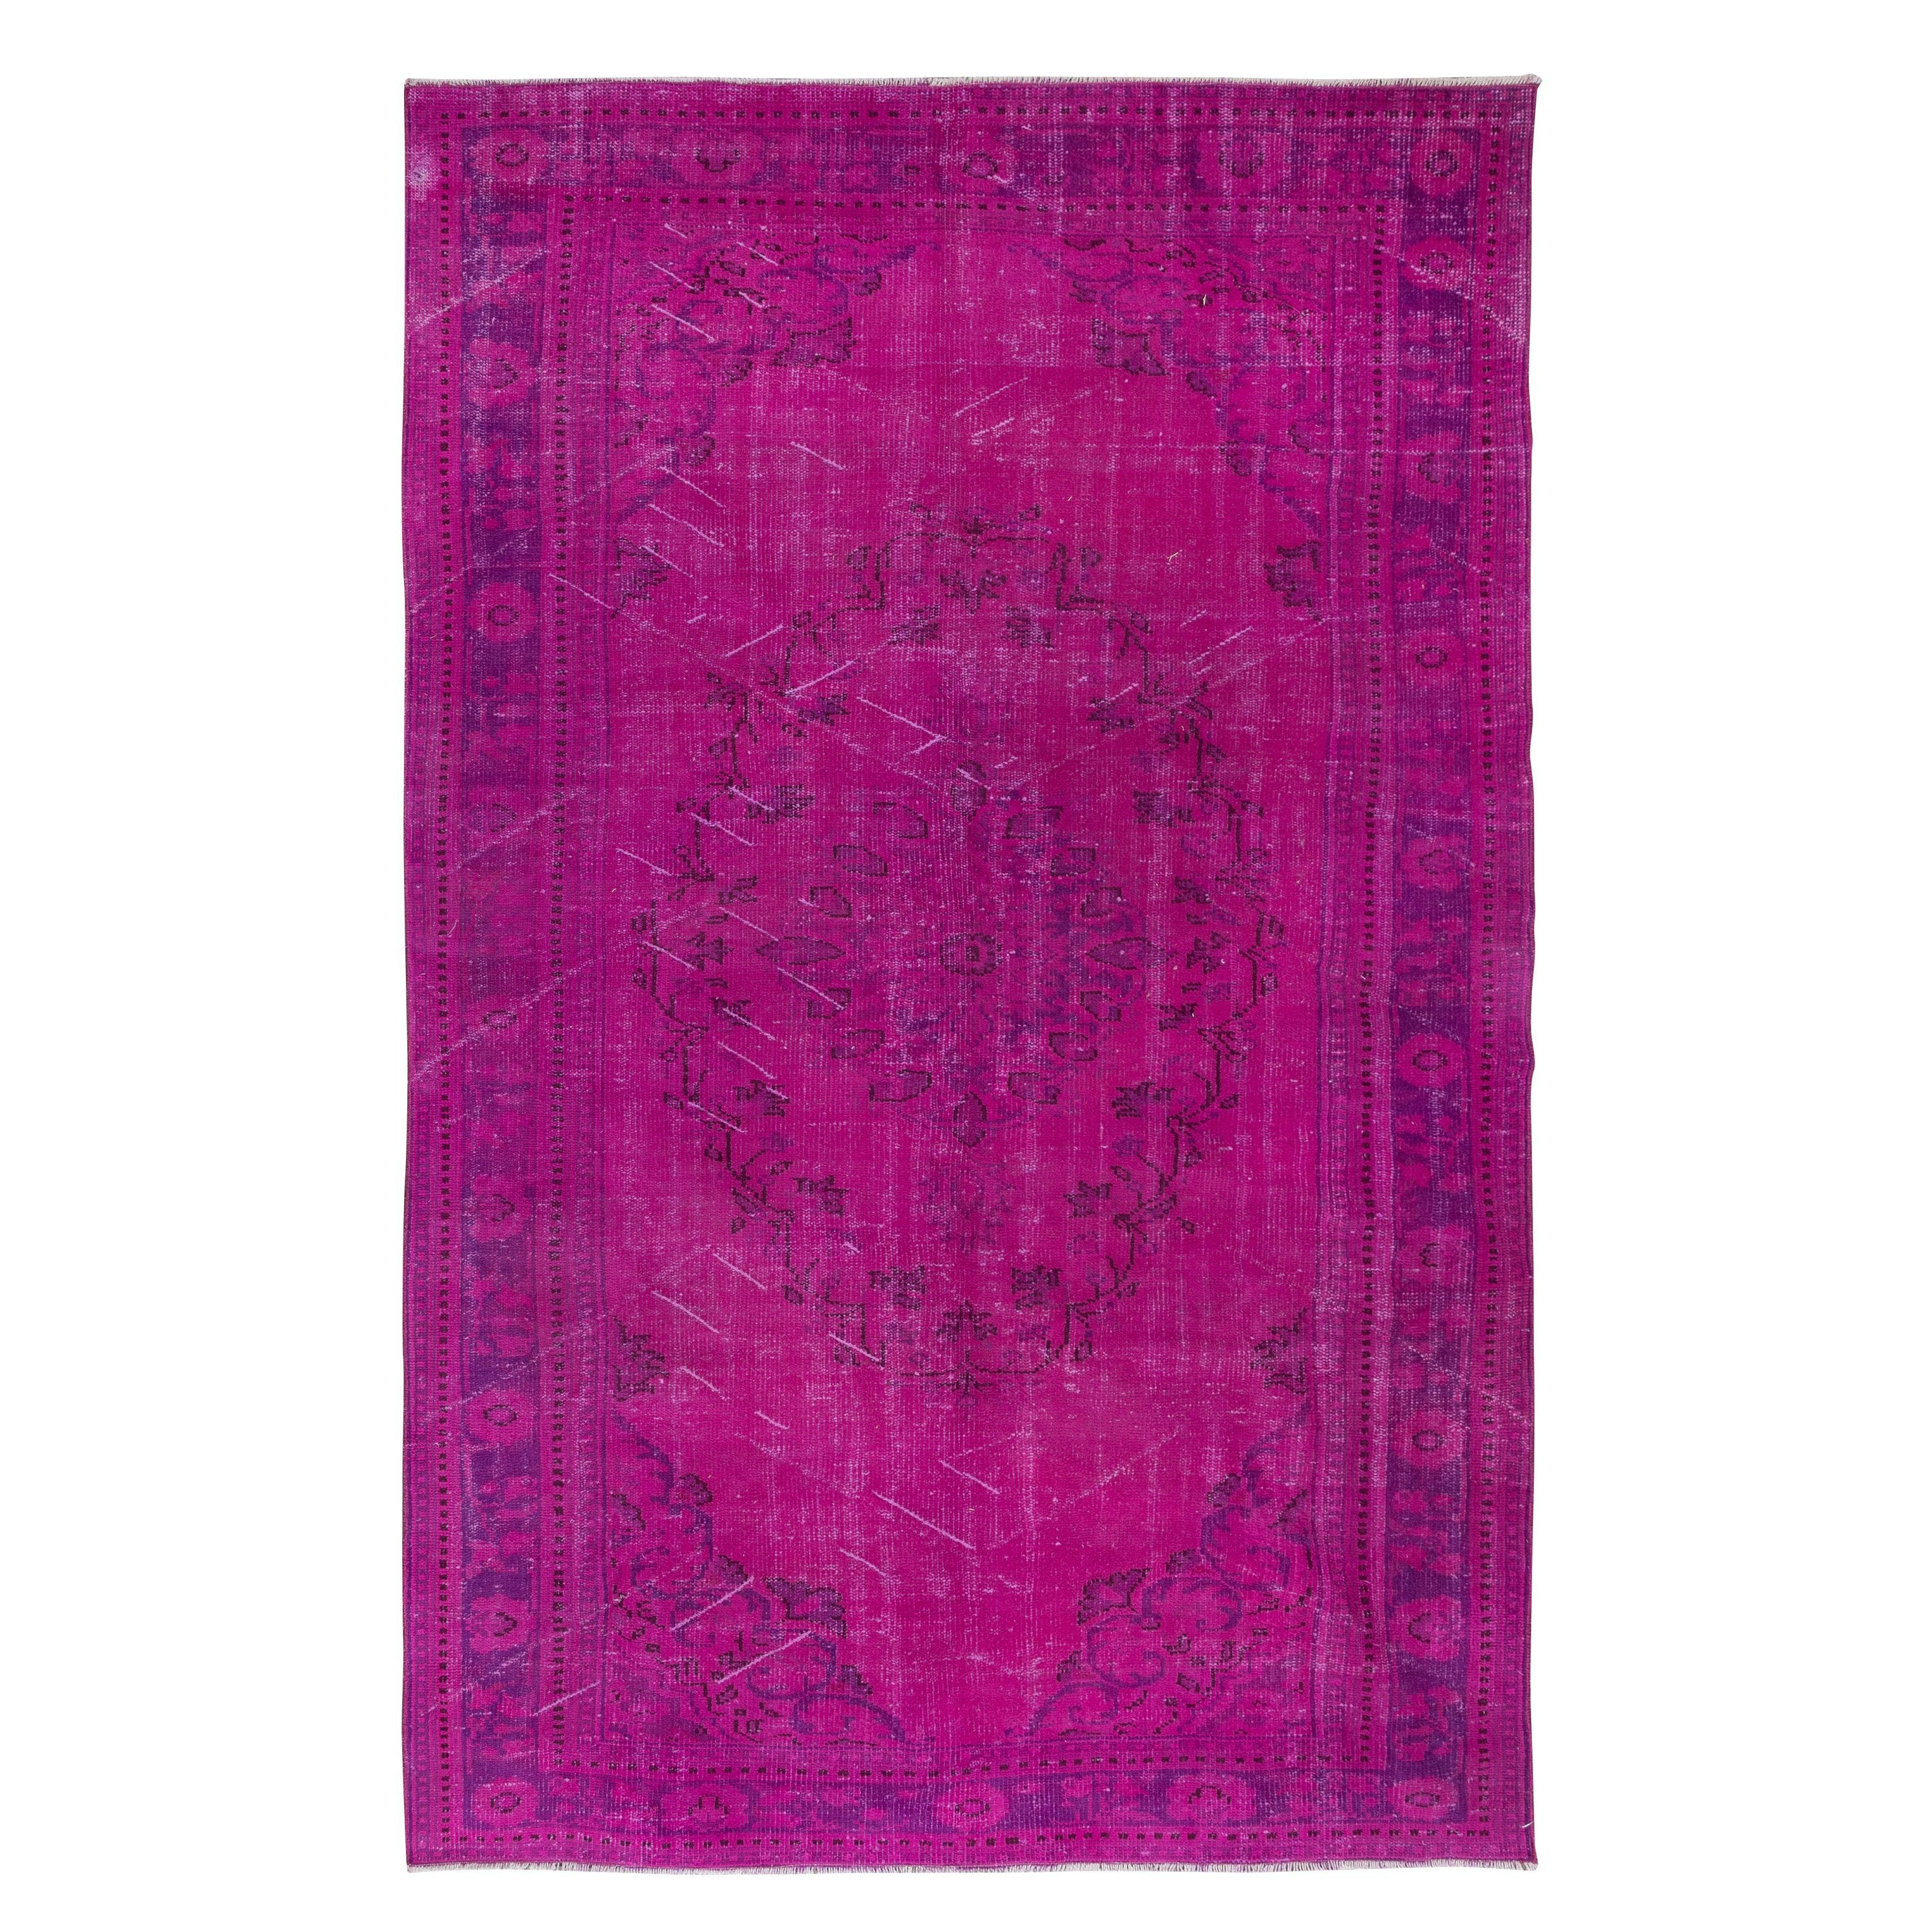 6.3x10 Ft Contemporary Area Rug in Pink & Light Purple, handgefertigter türkischer Teppich